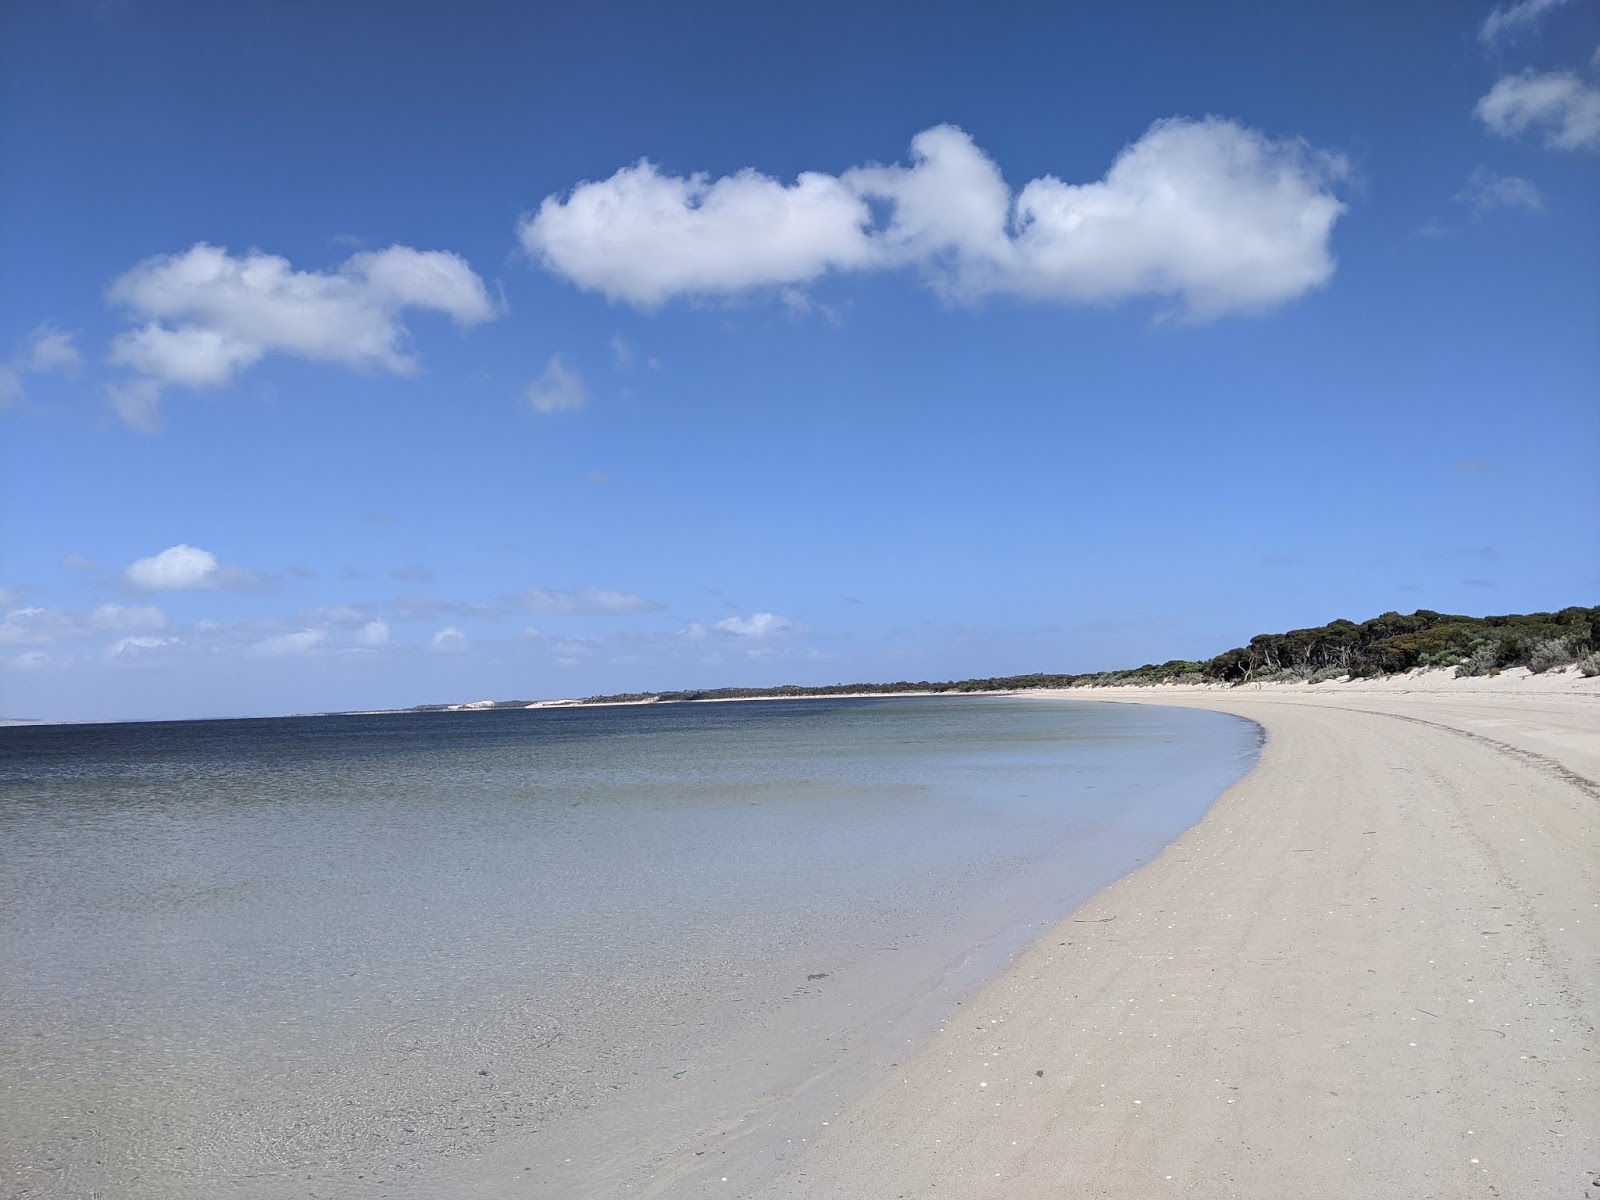 Zdjęcie Morgans Landing Beach z powierzchnią jasny piasek